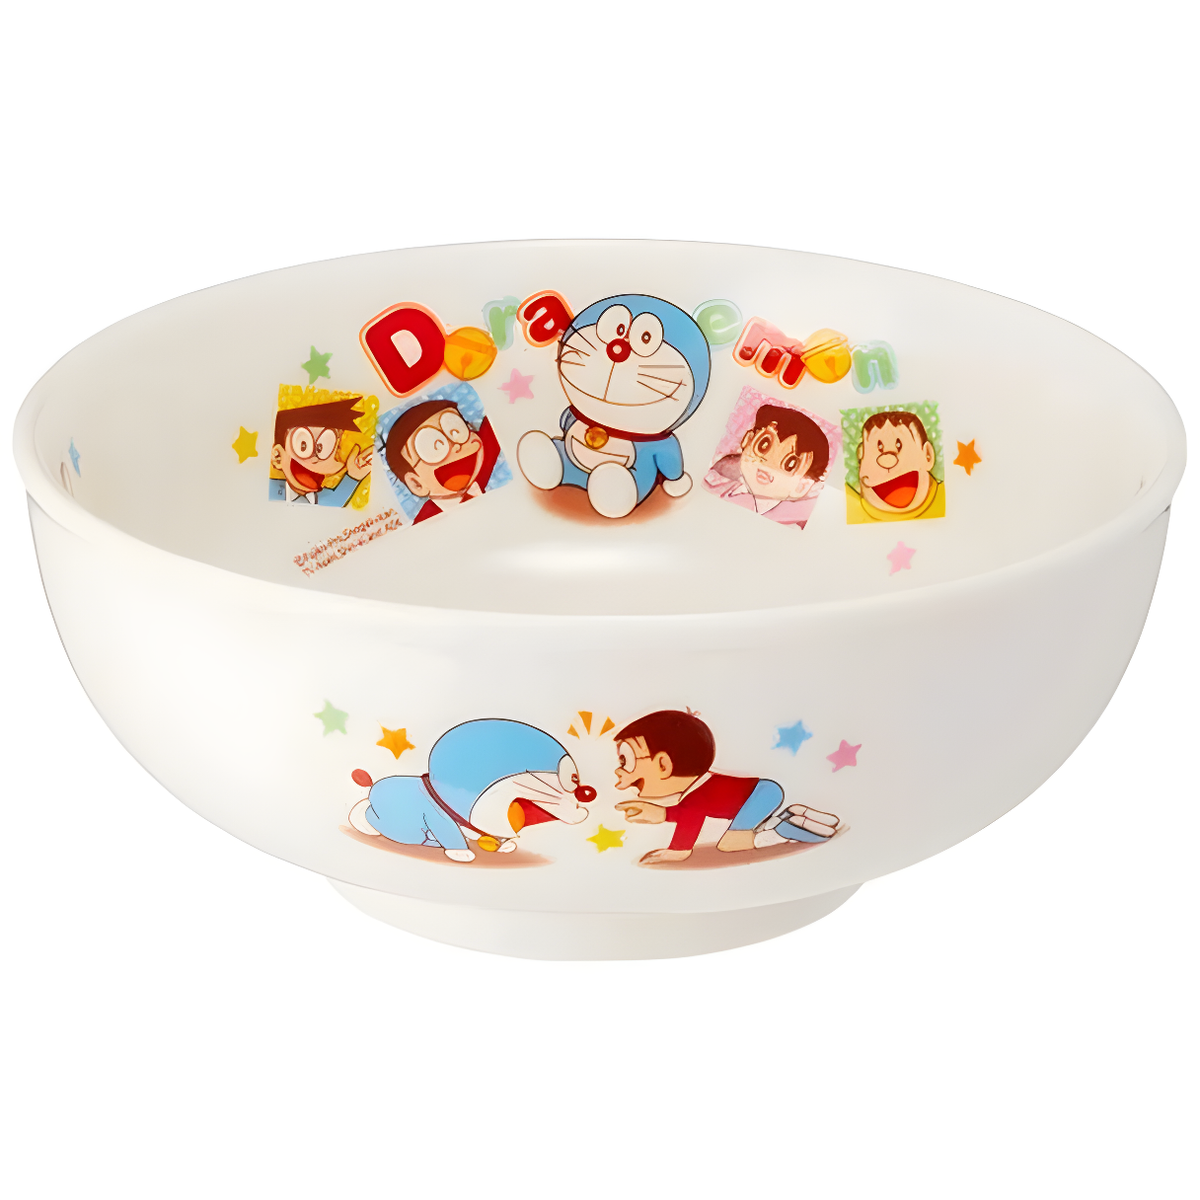 Noodle Bowl - Doraemon Kids (Japan Edition)